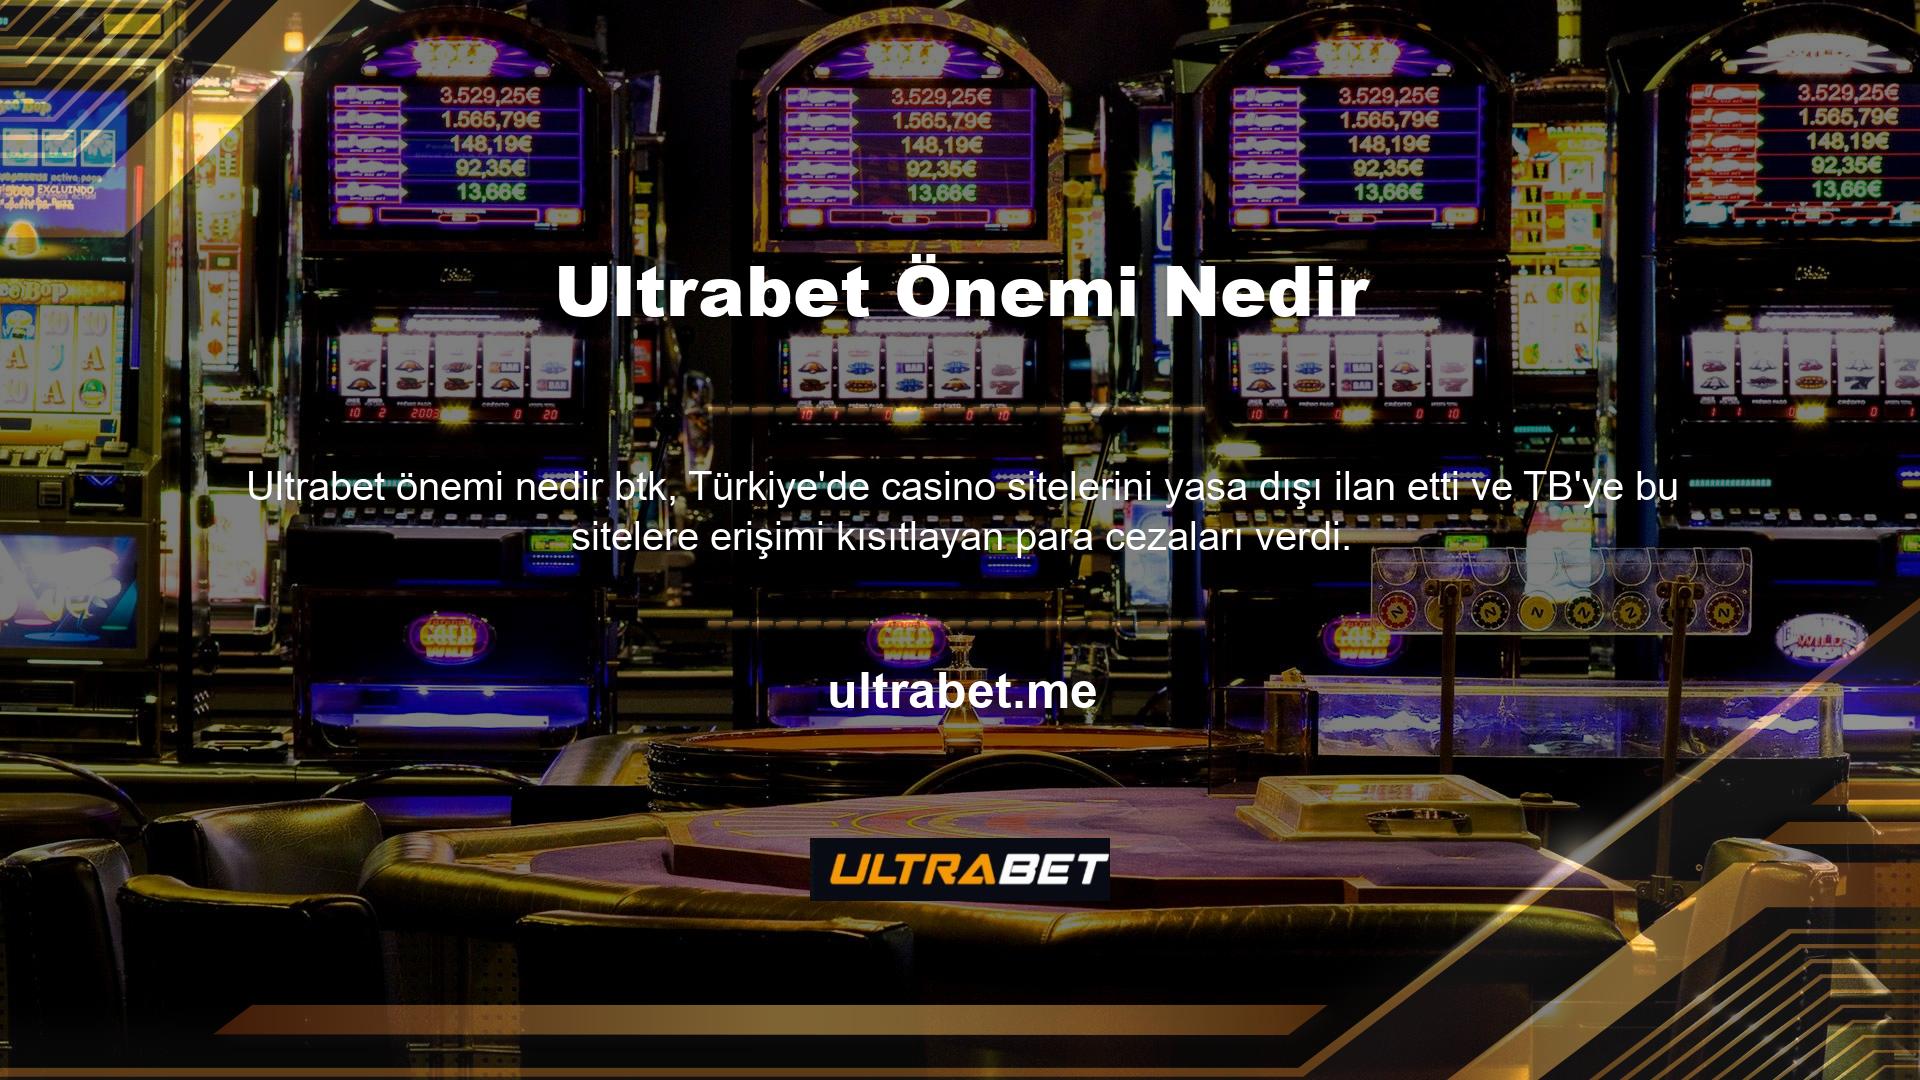 BTK yasağı, yüzbinlerce oyuncuya ve önemli işlem hacmine sahip en büyük çevrimiçi casino platformu Ultrabet üyelerine 7/24 hizmet verirken giriş adresini Ultrabet